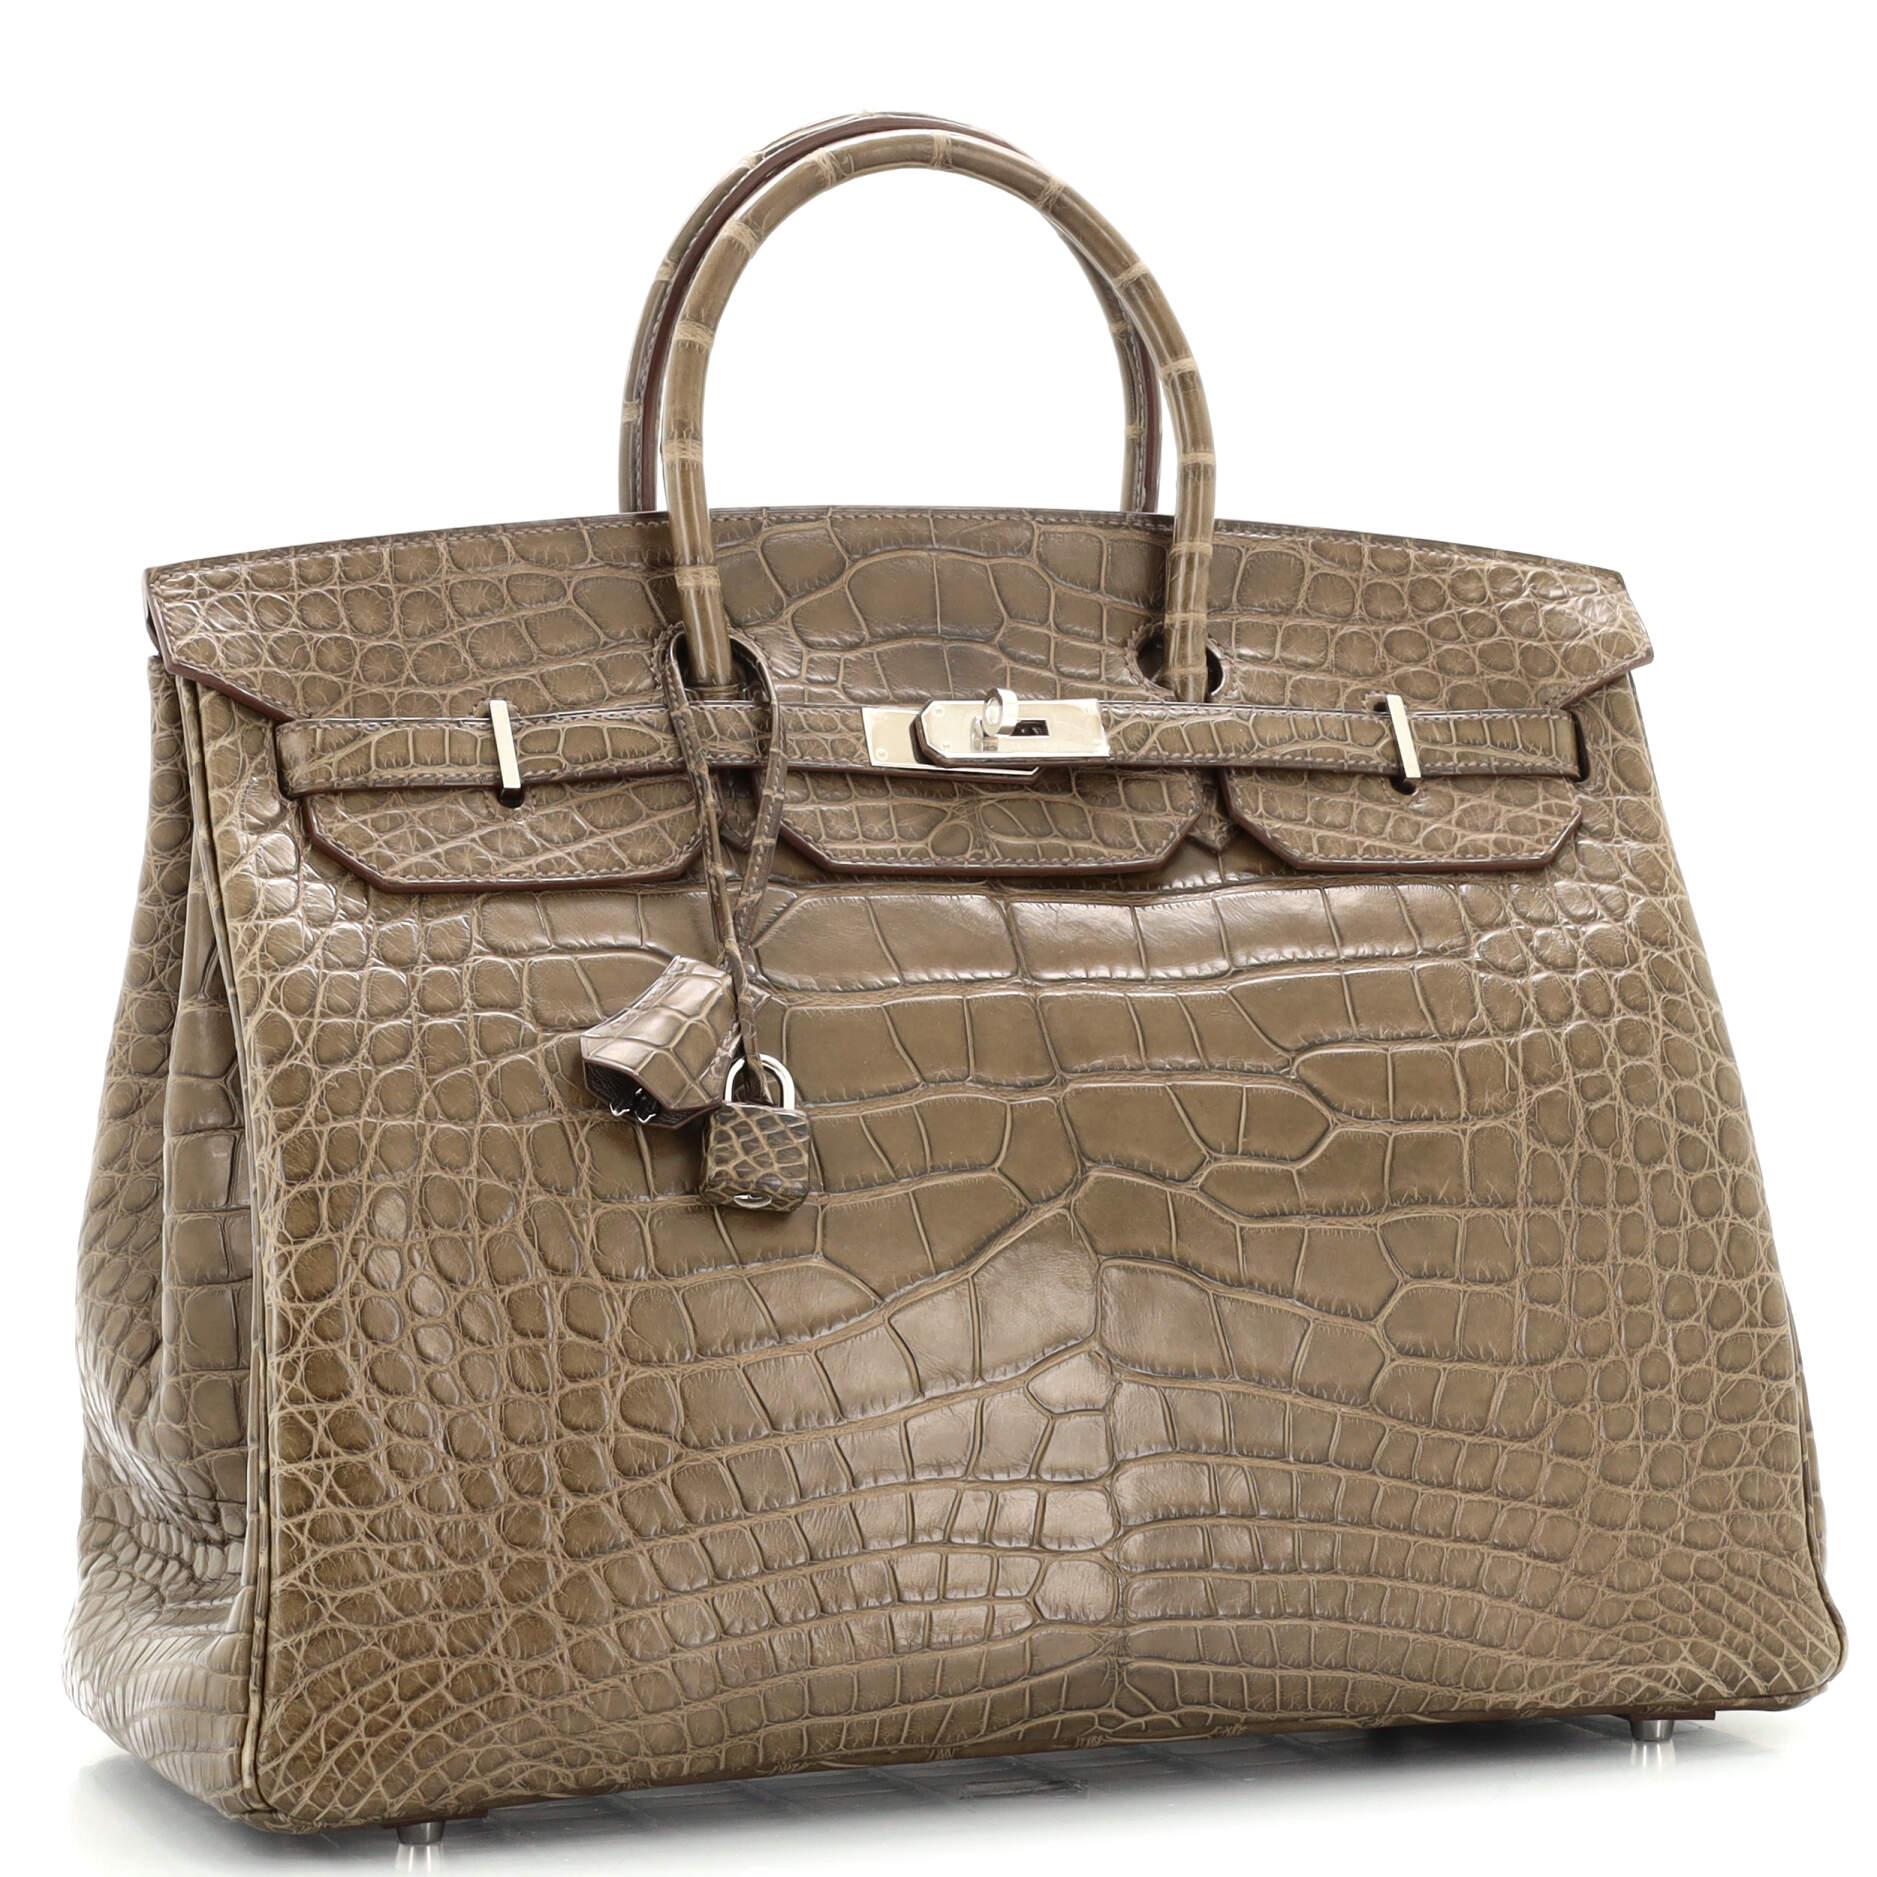 Brown Hermes Birkin Handbag Vert Olive Matte Alligator with Palladium Hardware 40